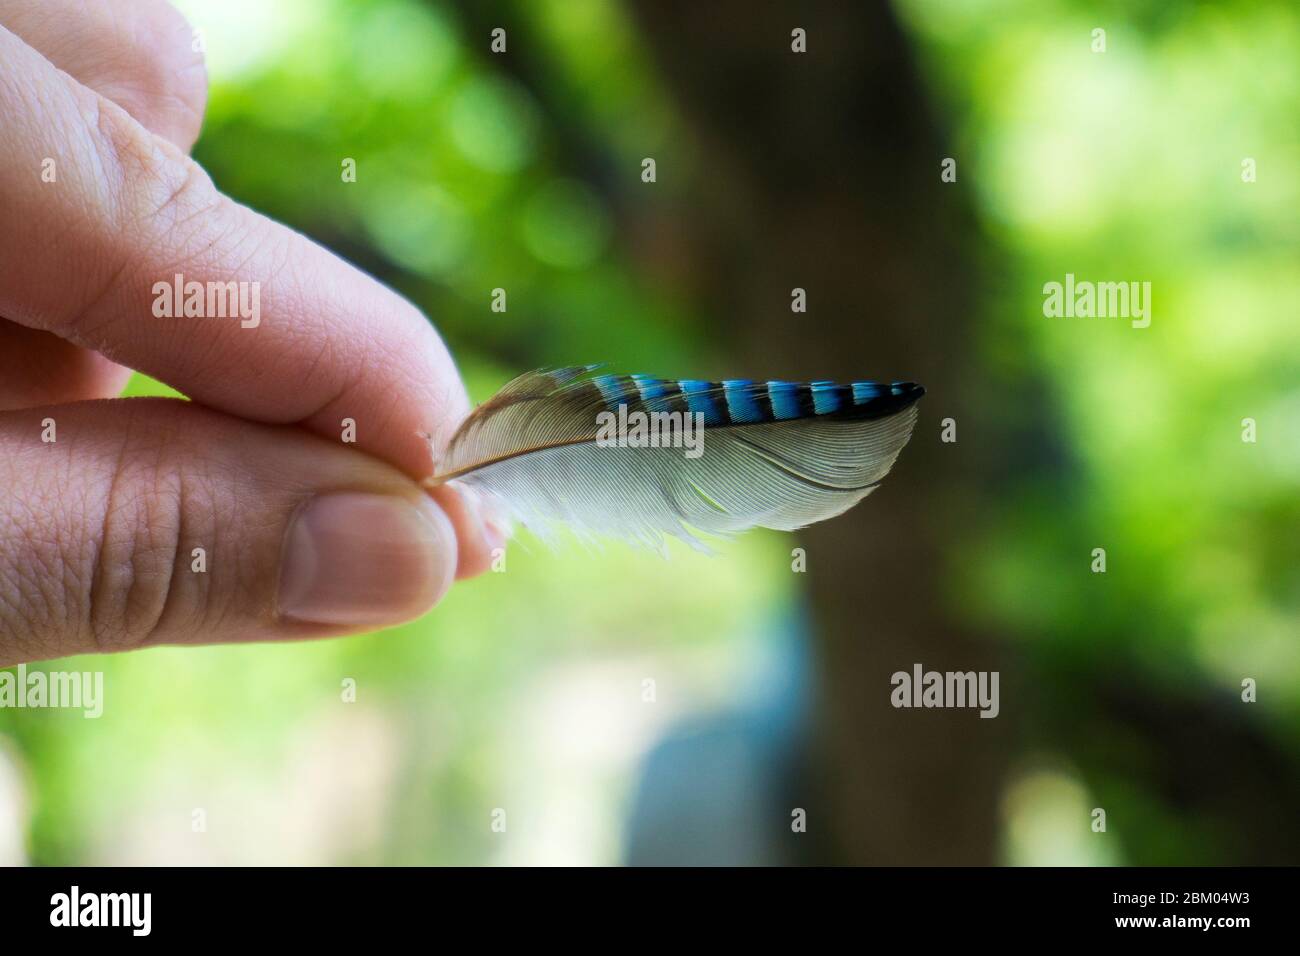 Nahaufnahme der Hand, die eine hübsche eichelfeder in Bulgarien hält Stockfoto